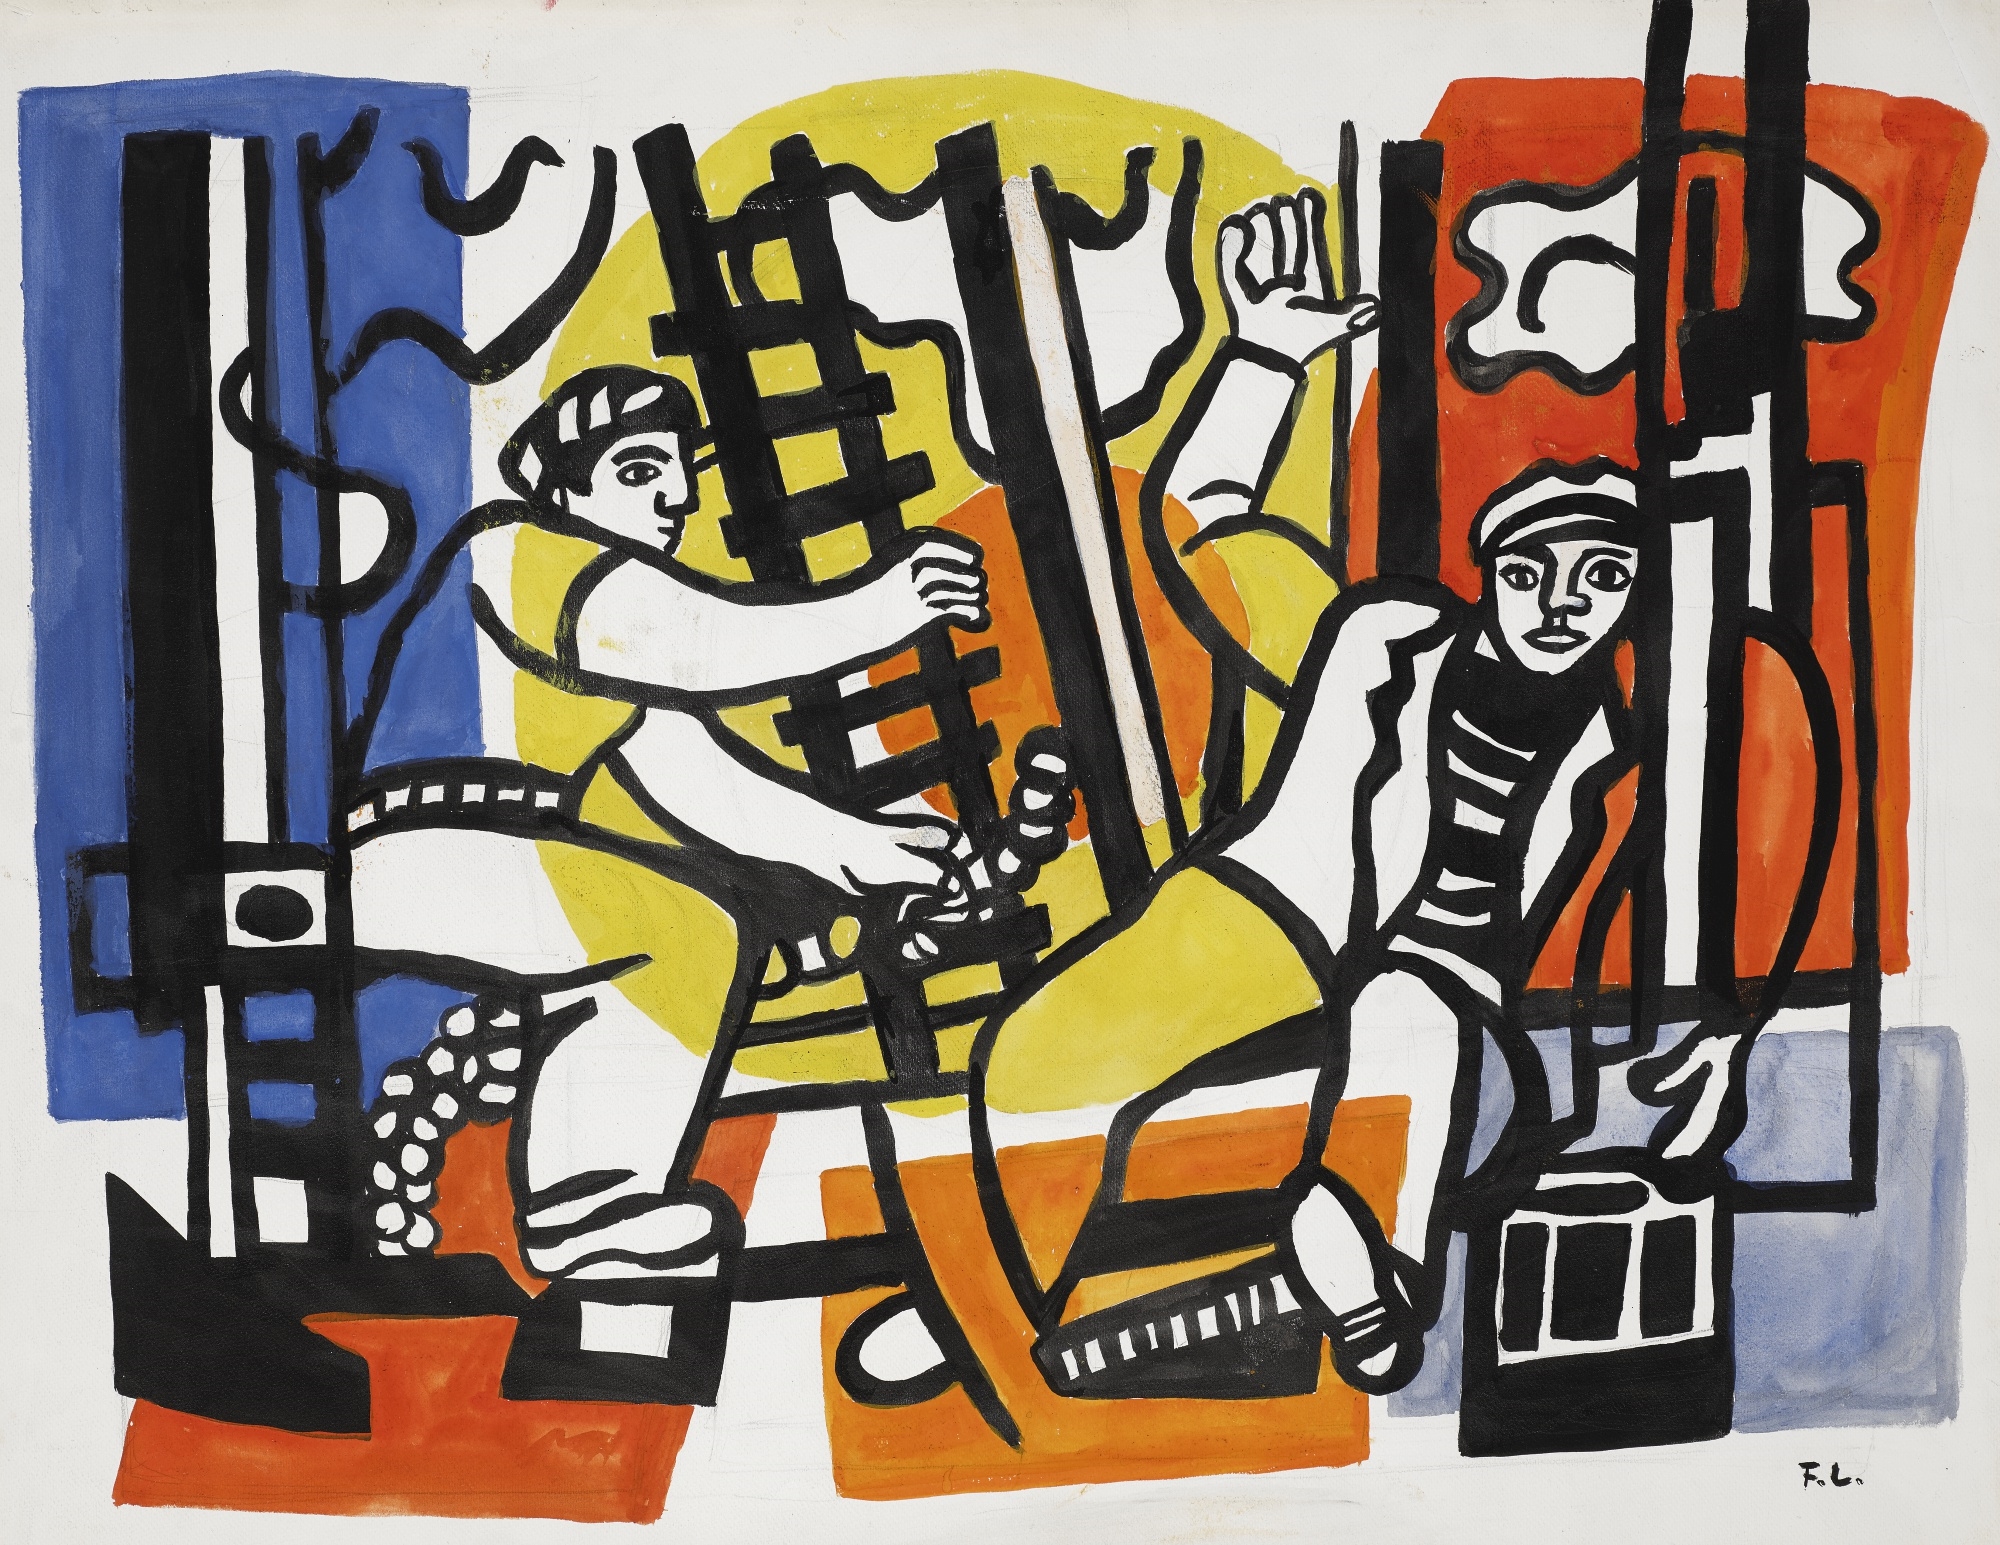 ÉTUDE POUR LES CONSTRUCTEURS by Fernand Léger, circa 1951-1952